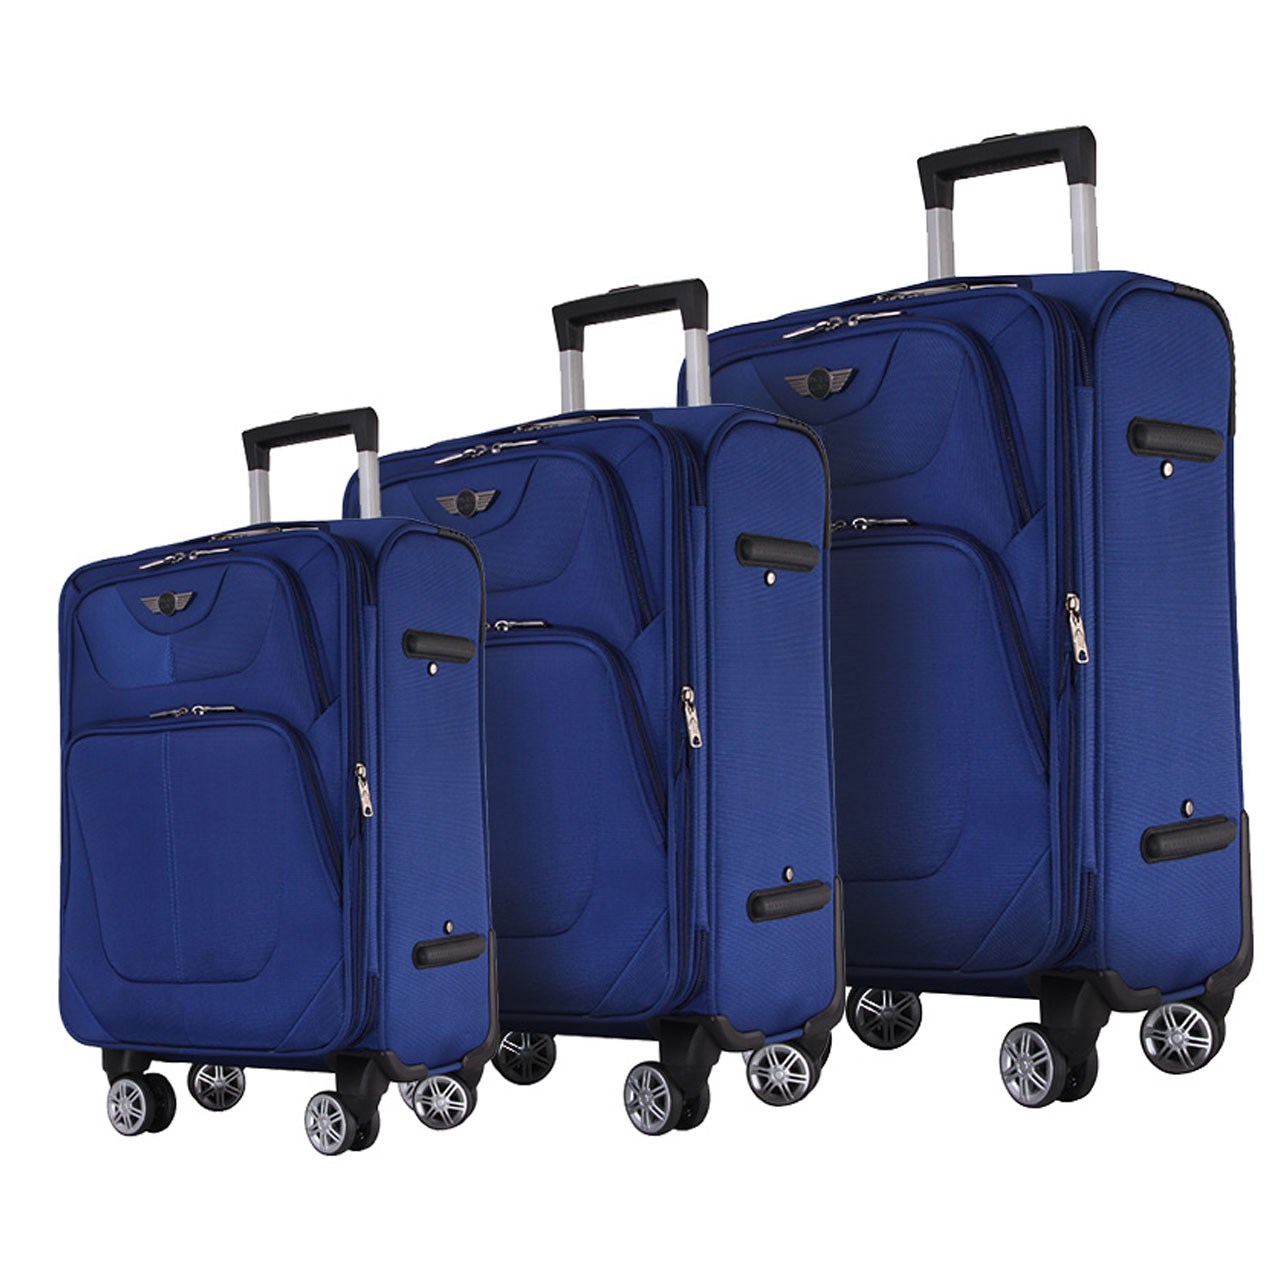 مجموعه سه عددی چمدان تیپس لند مدل 18-4-1753